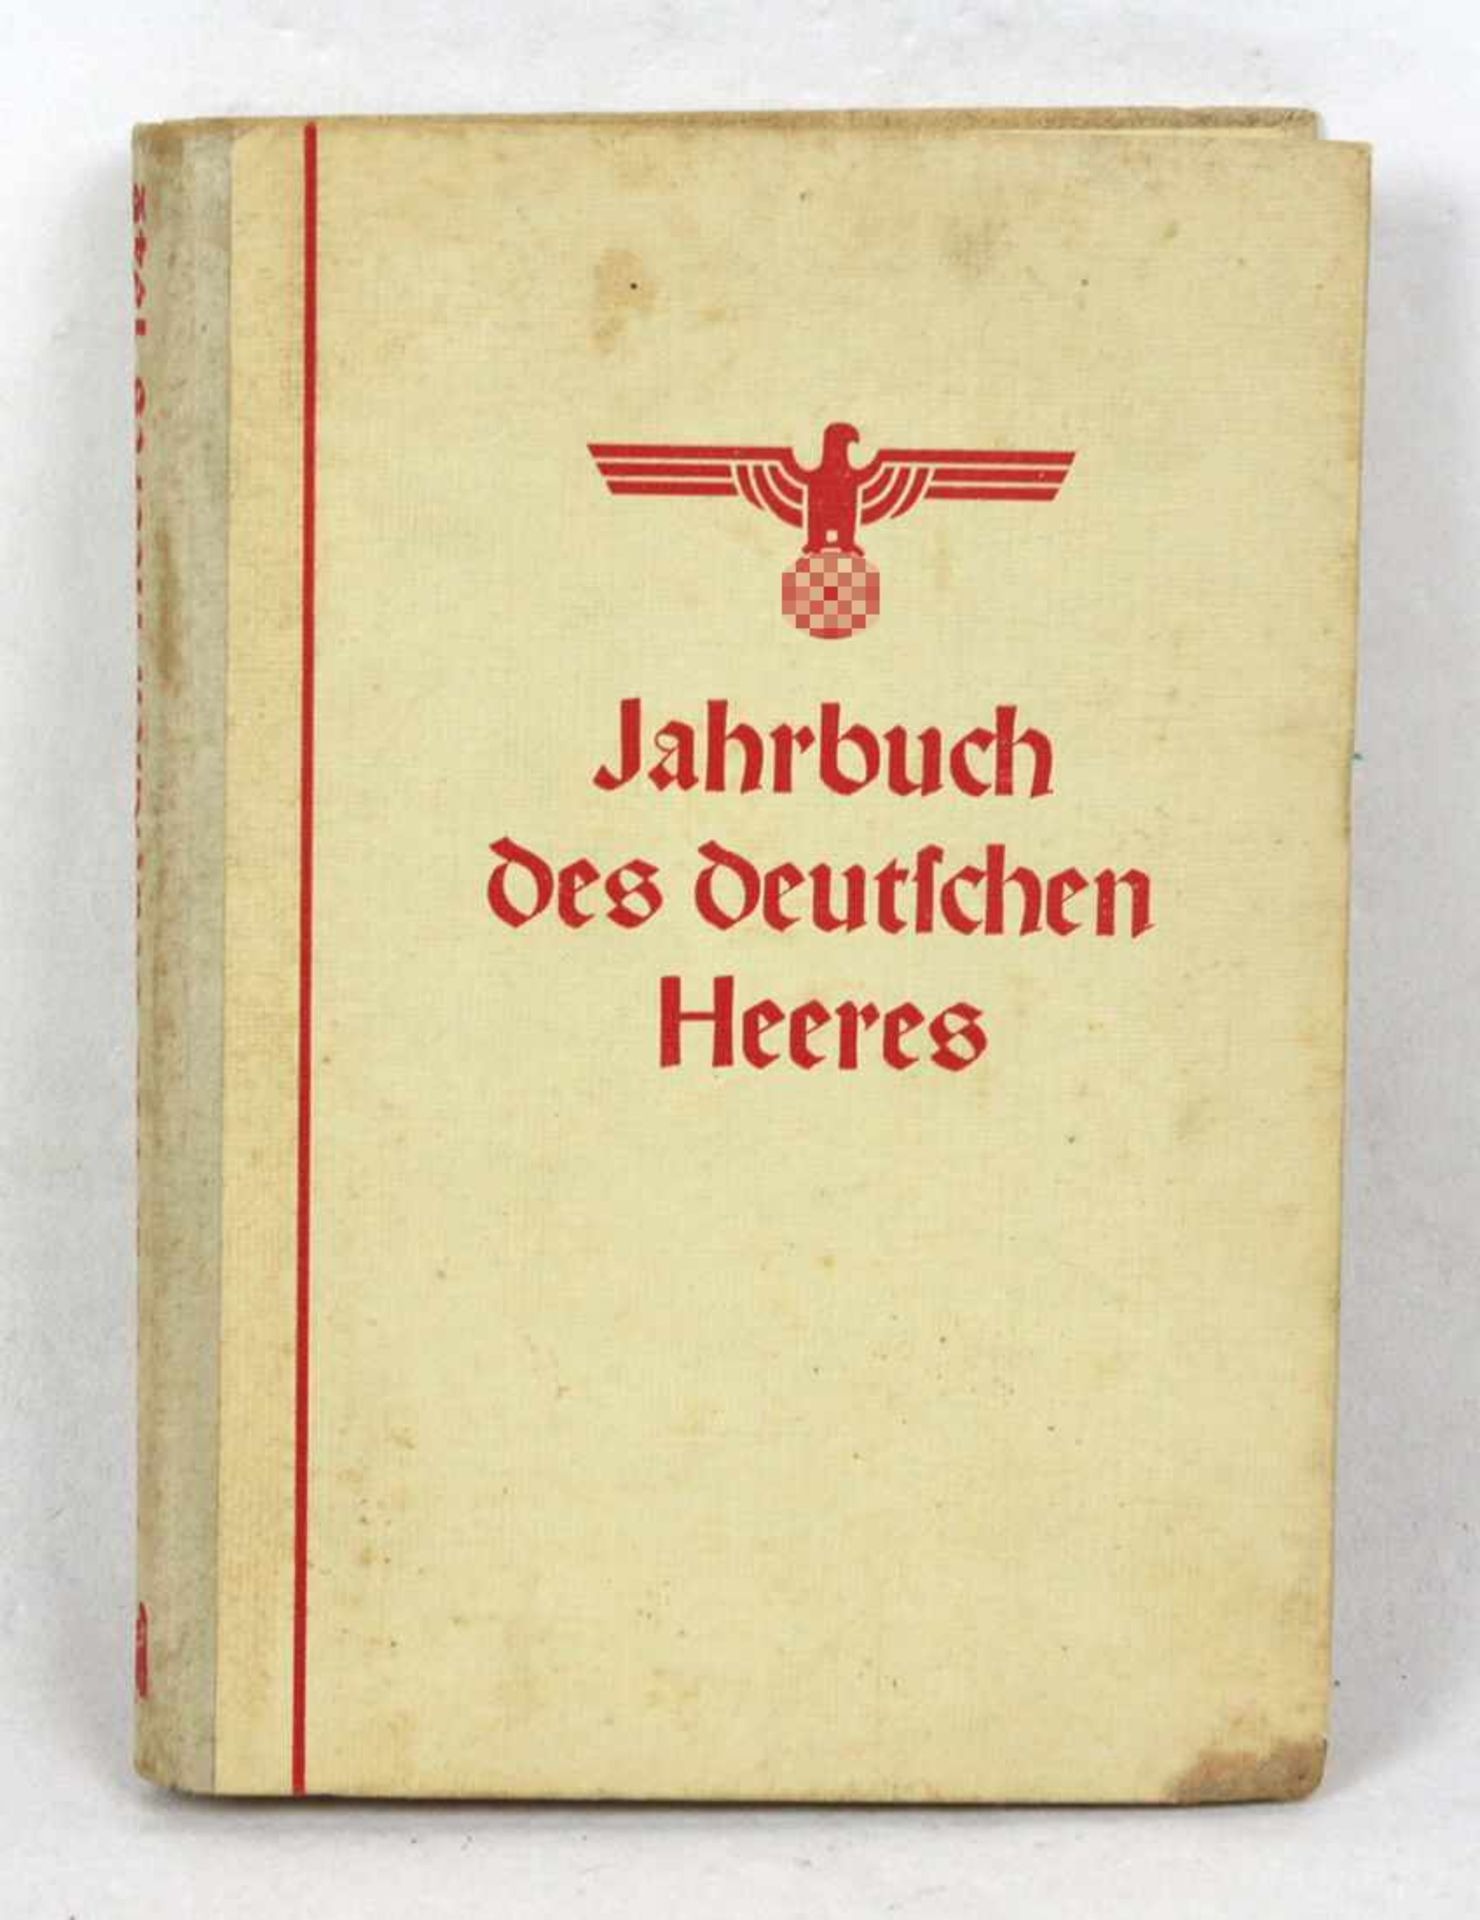 Jahrbuch des deutschen Heeres 1942 hrsg. vom Oberkommando des Heeres, Bearbeiter Major Judeich, 7.